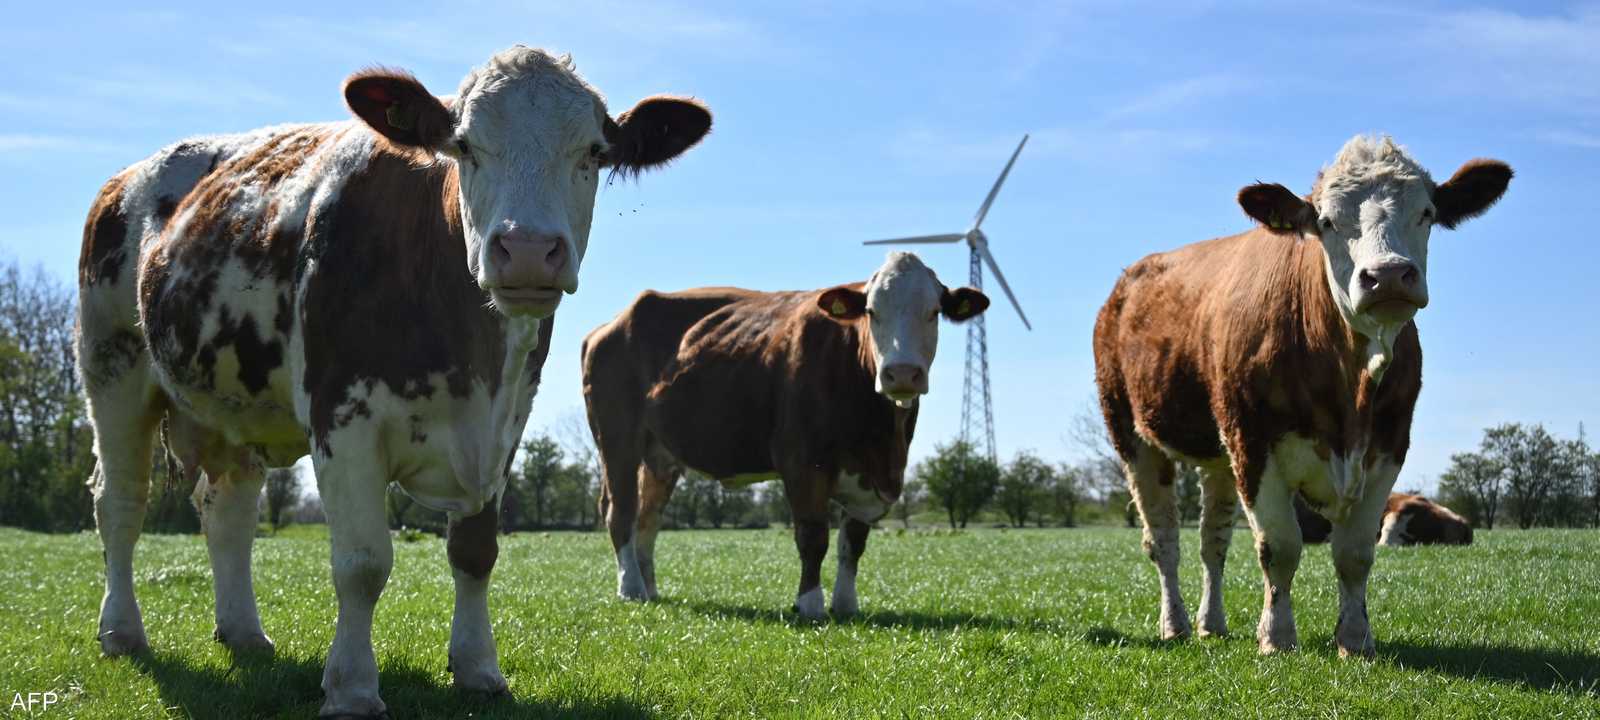 ضريبة كربون على الماشية في الدنمارك